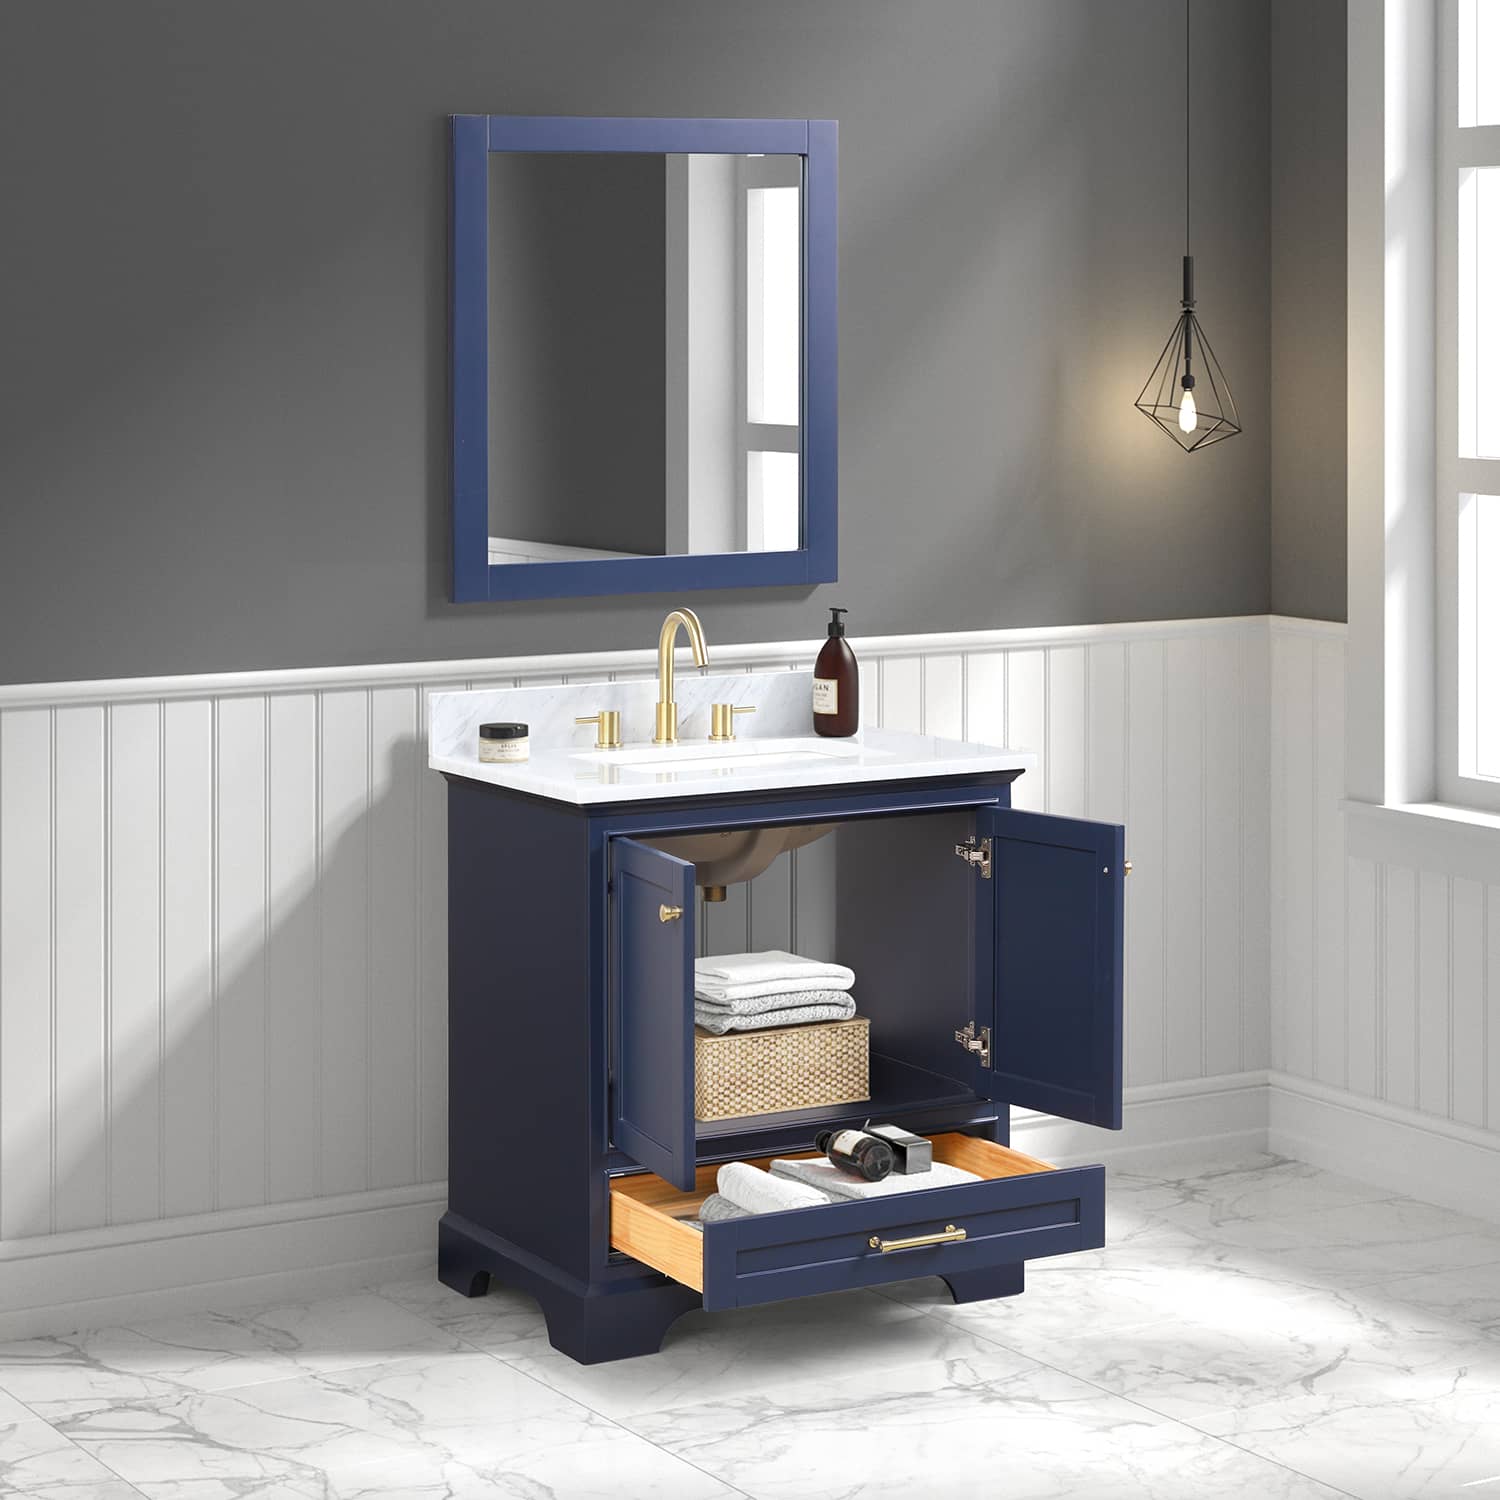 Copenhagen 30" Bathroom Vanity  #size_30"  #color_navy blue